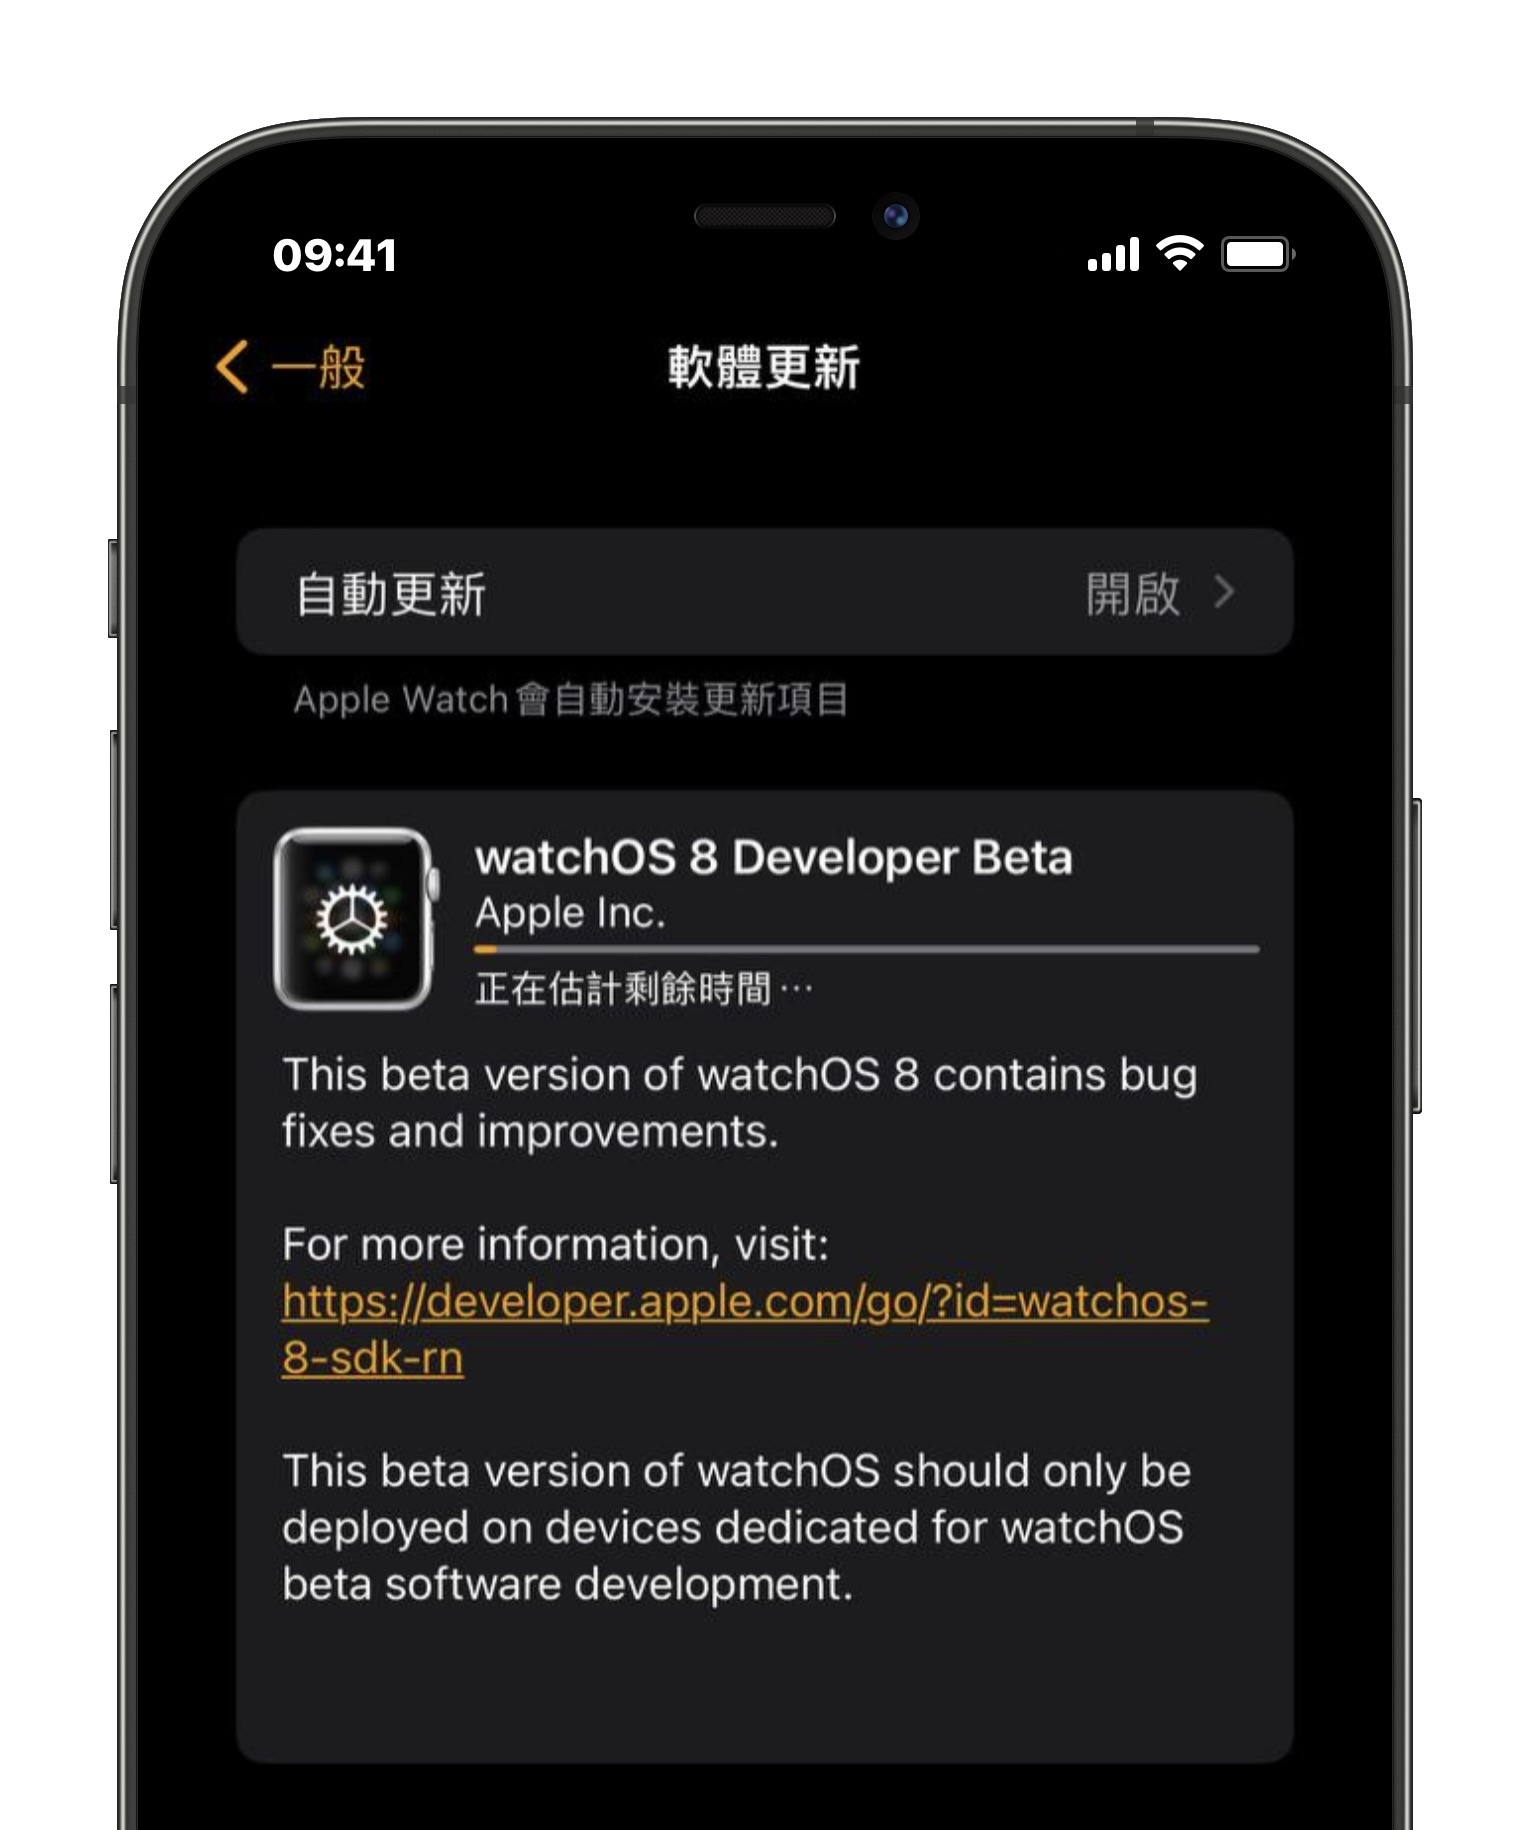 watchOS 8 beta